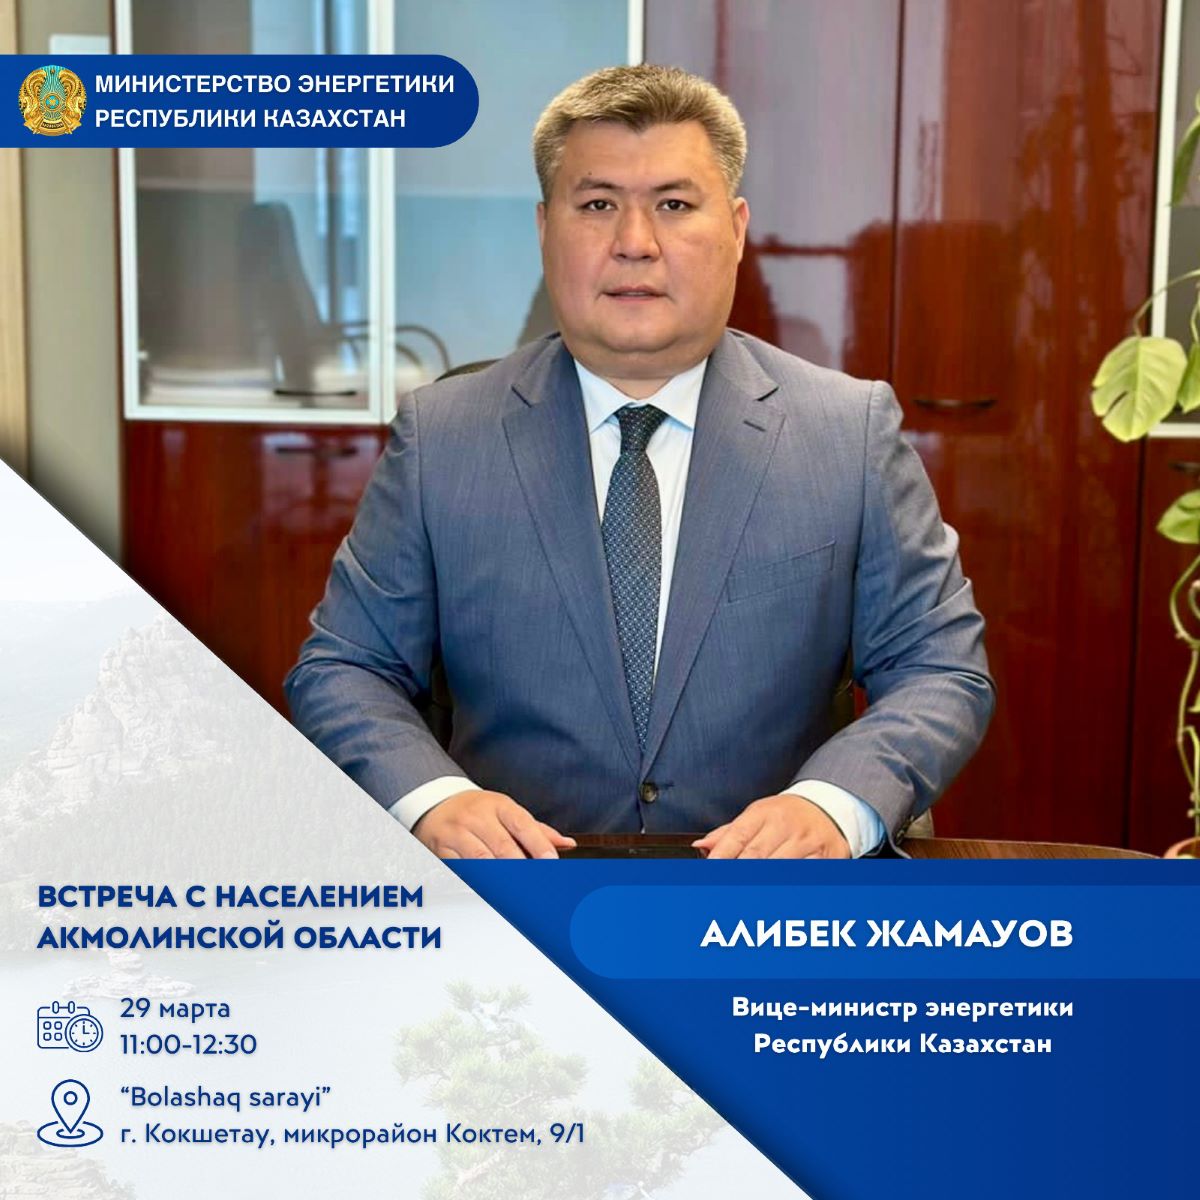 Объявление о проведении встречи вице-министра энергетики Республики Казахстан с населением Акмолинской области